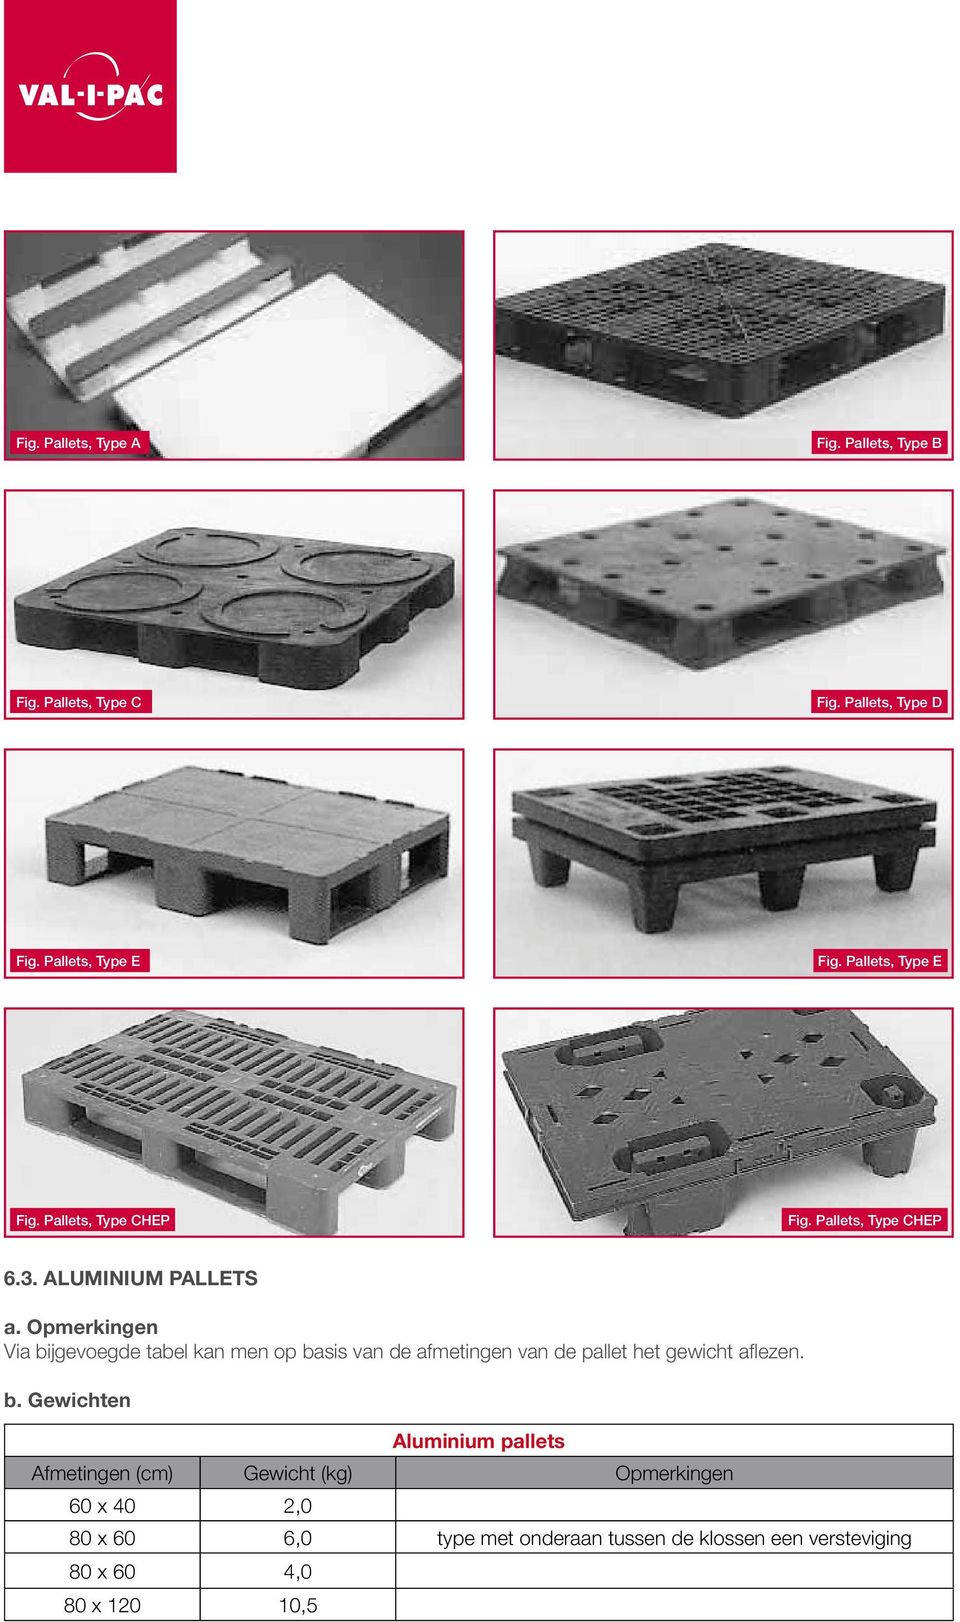 Aluminium pallets Via bijgevoegde tabel kan men op basis van de afmetingen van de pallet het gewicht aflezen.